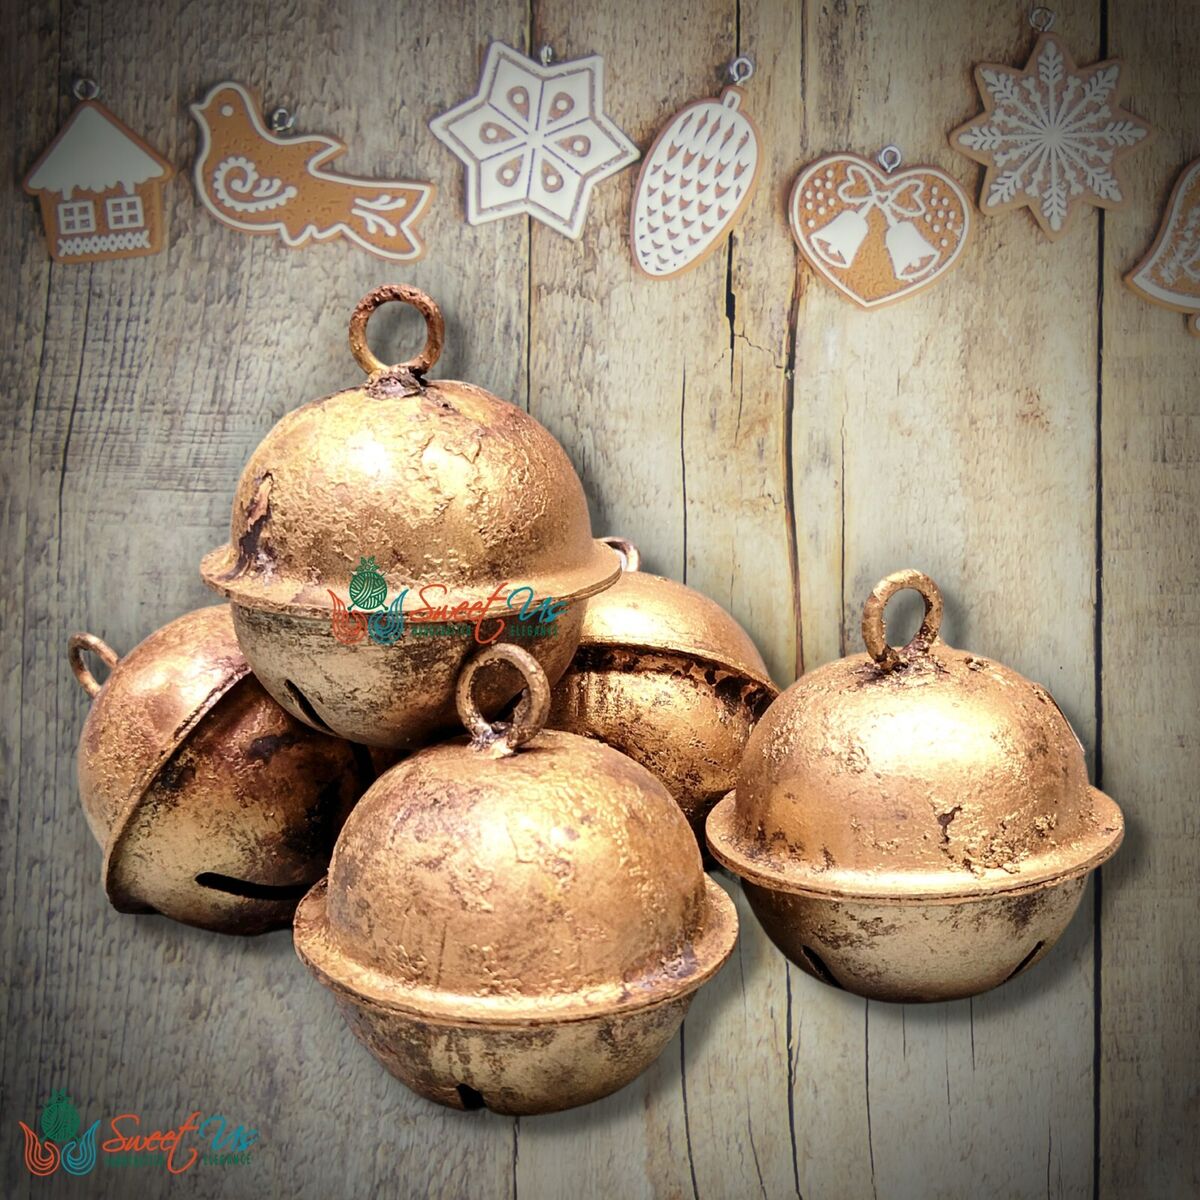 Oversized Vintage-Inspired Sleigh Bells